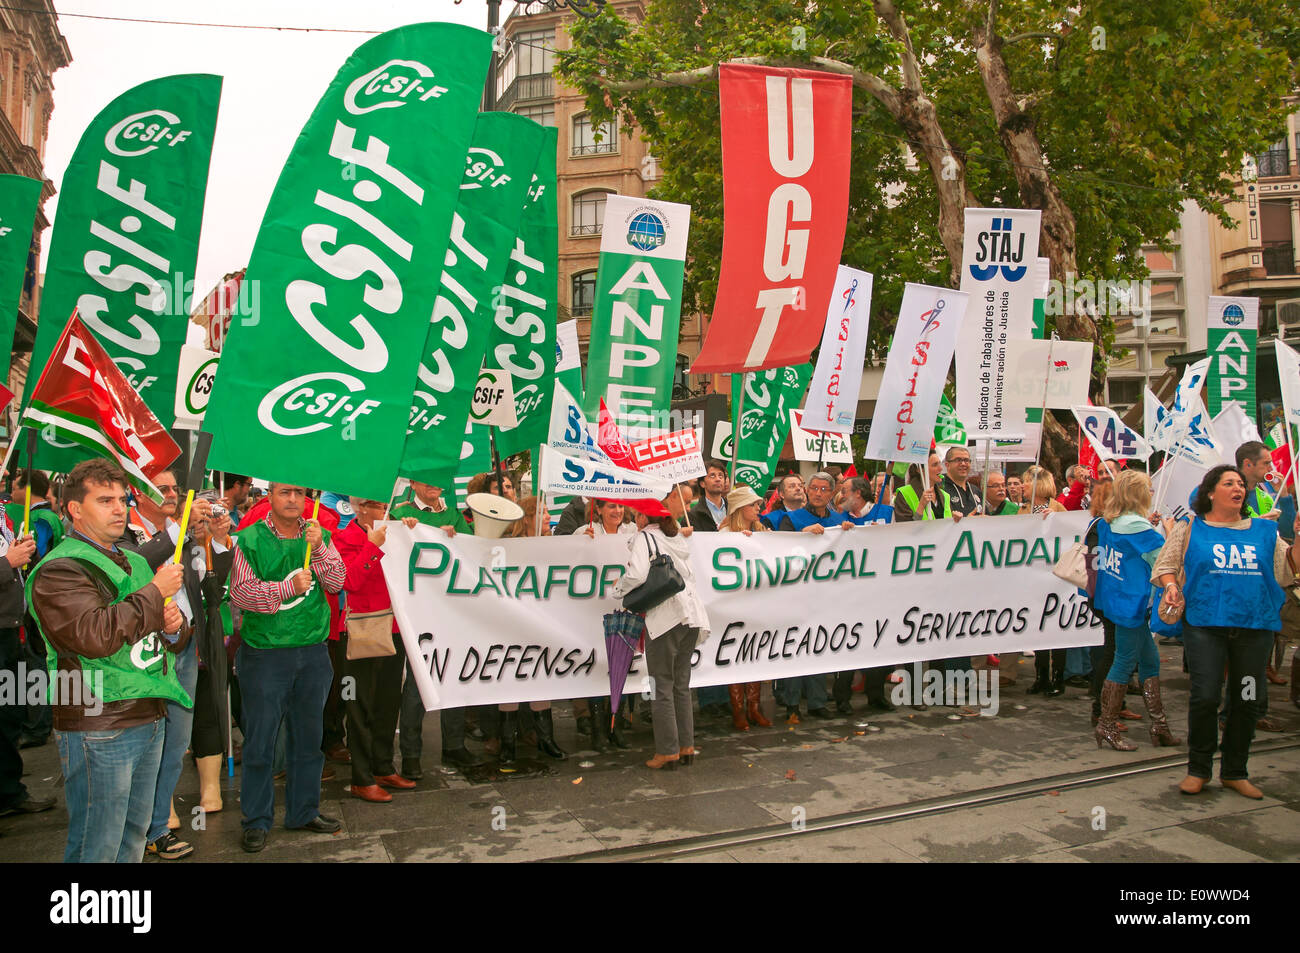 Manifestation contre la crise, Séville, Espagne, Europe Banque D'Images